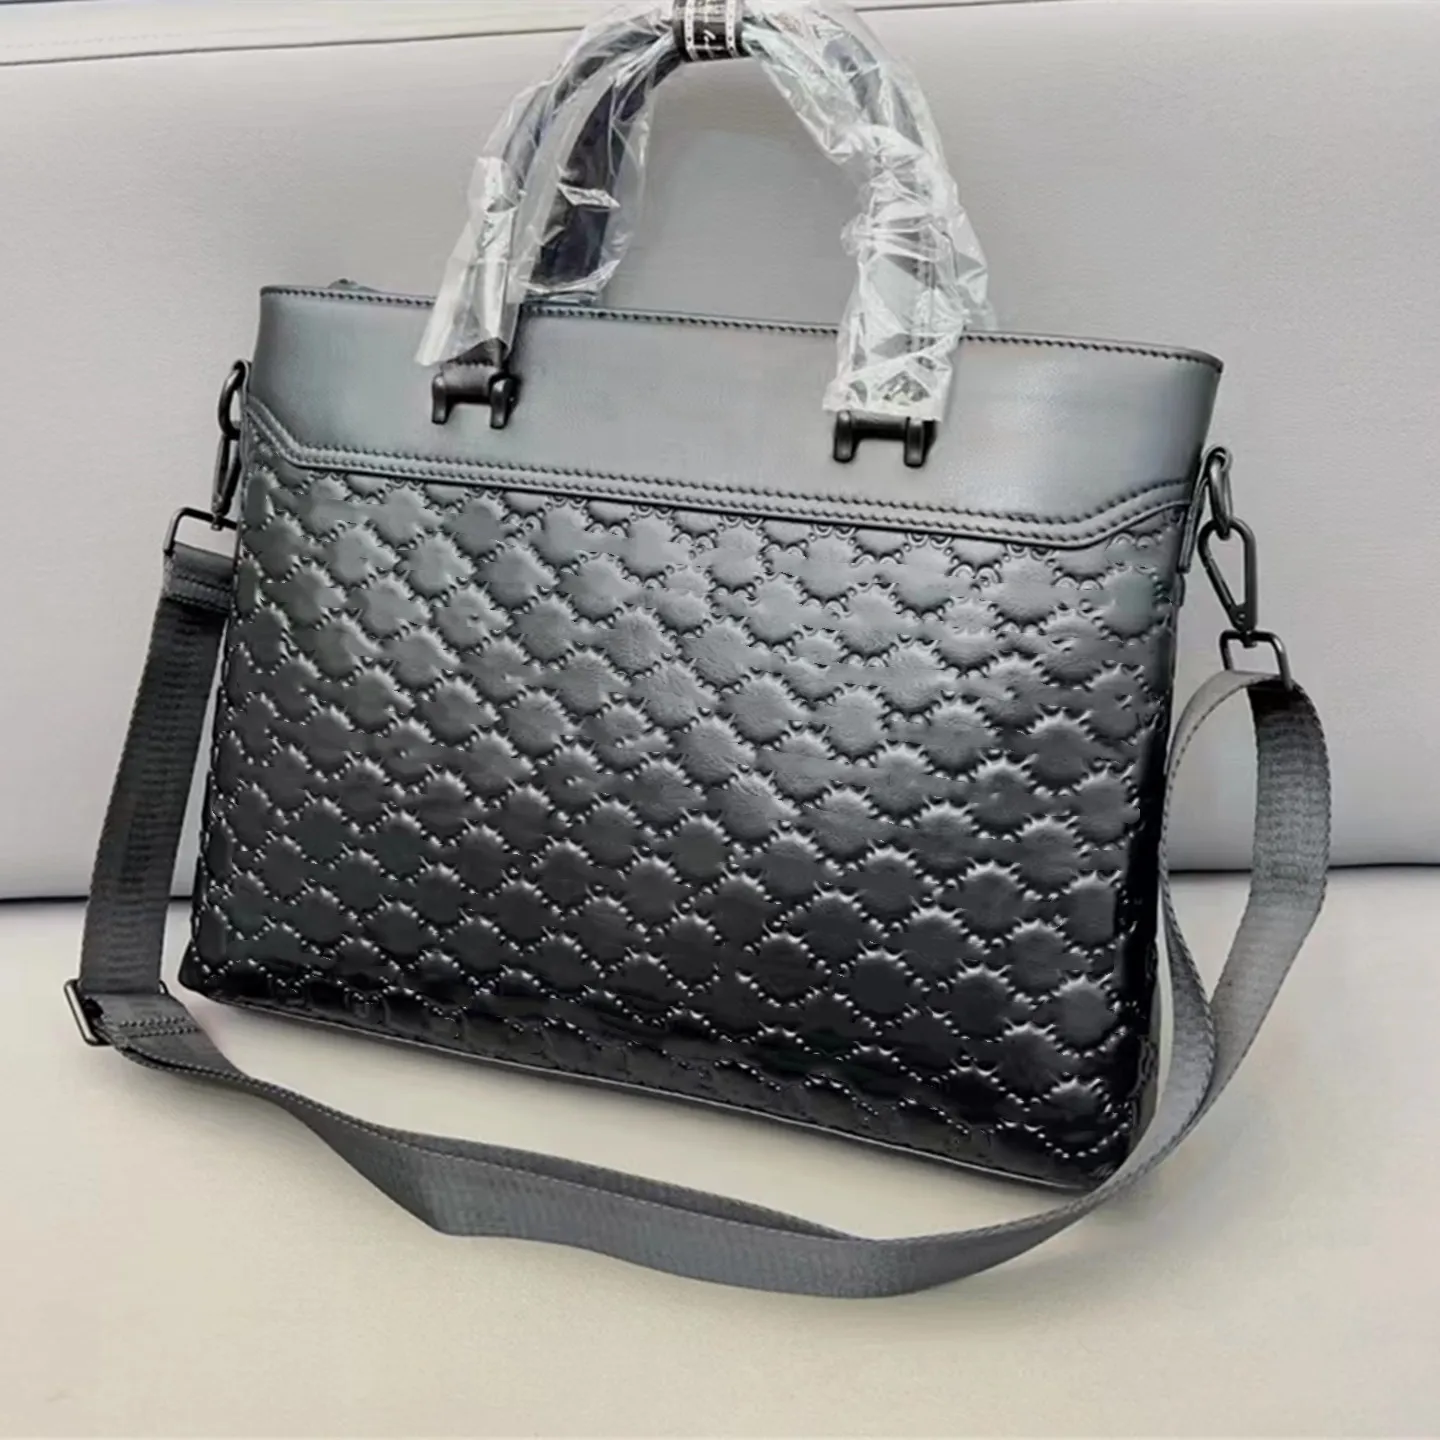 Famous designer men's pure leather black briefcase messenger bag laptop bag business office bag cross-body bag traveling bag shoulderbag purse 5 star review